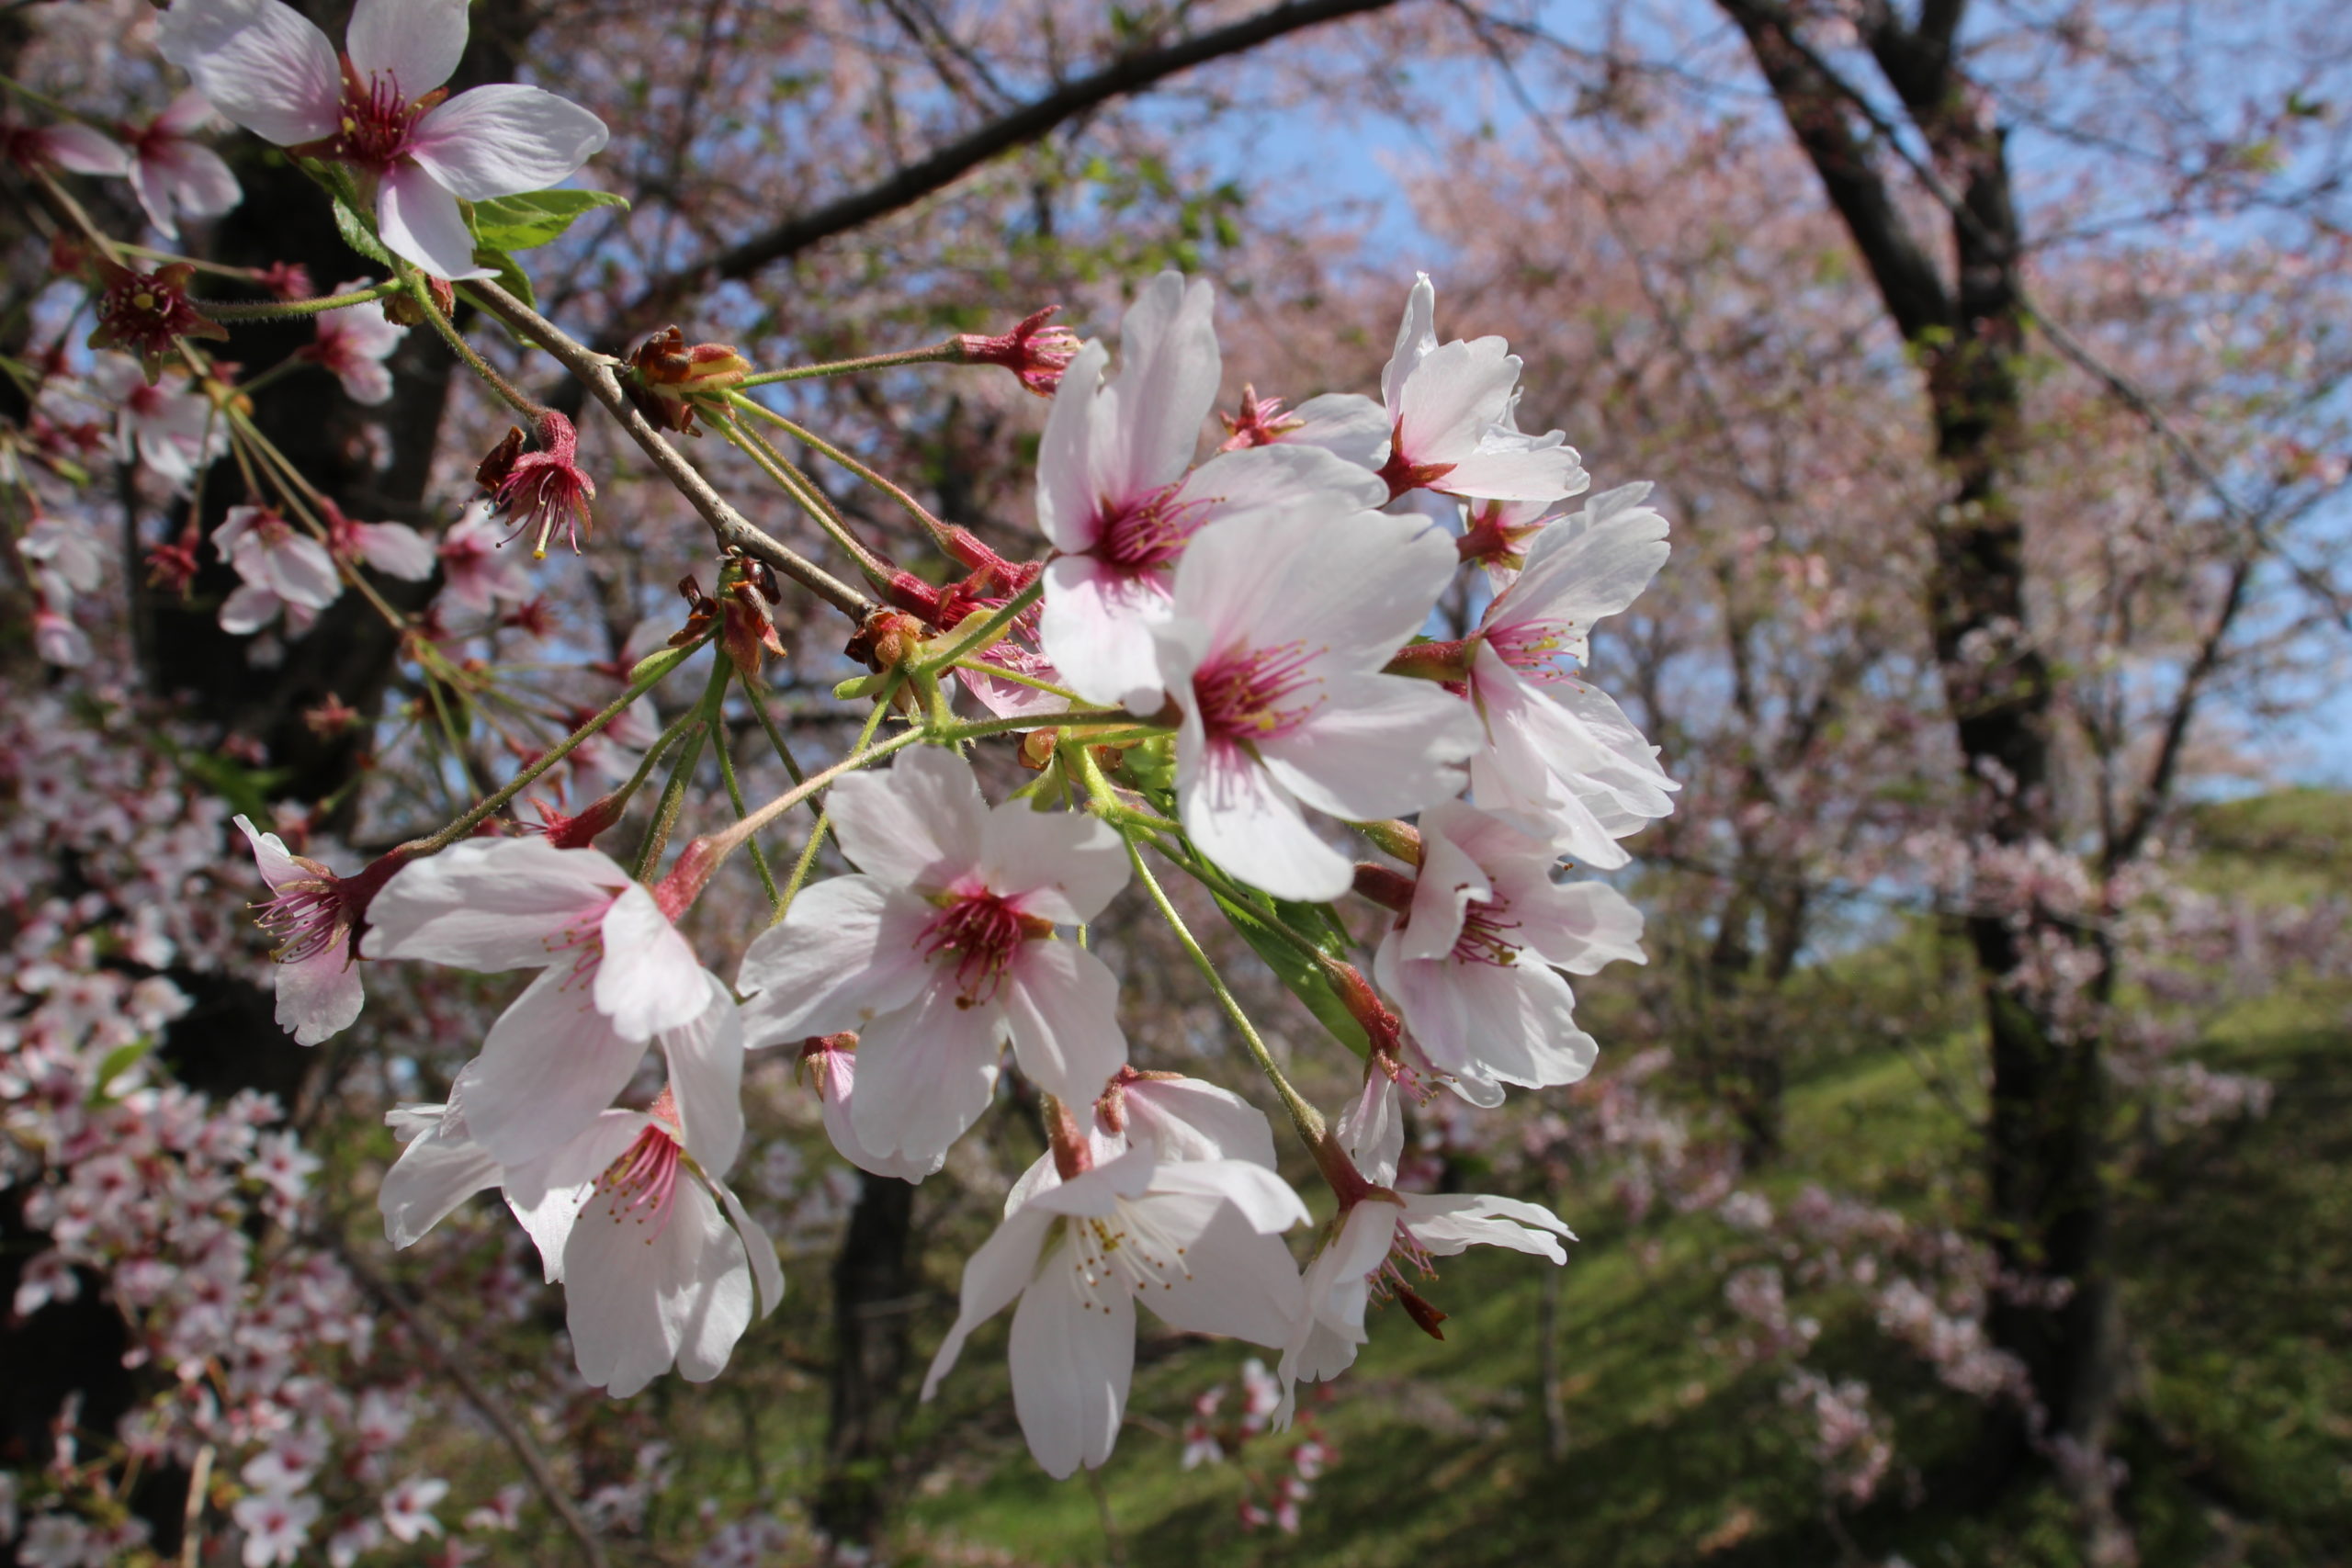 奈良・塚原橋の桜